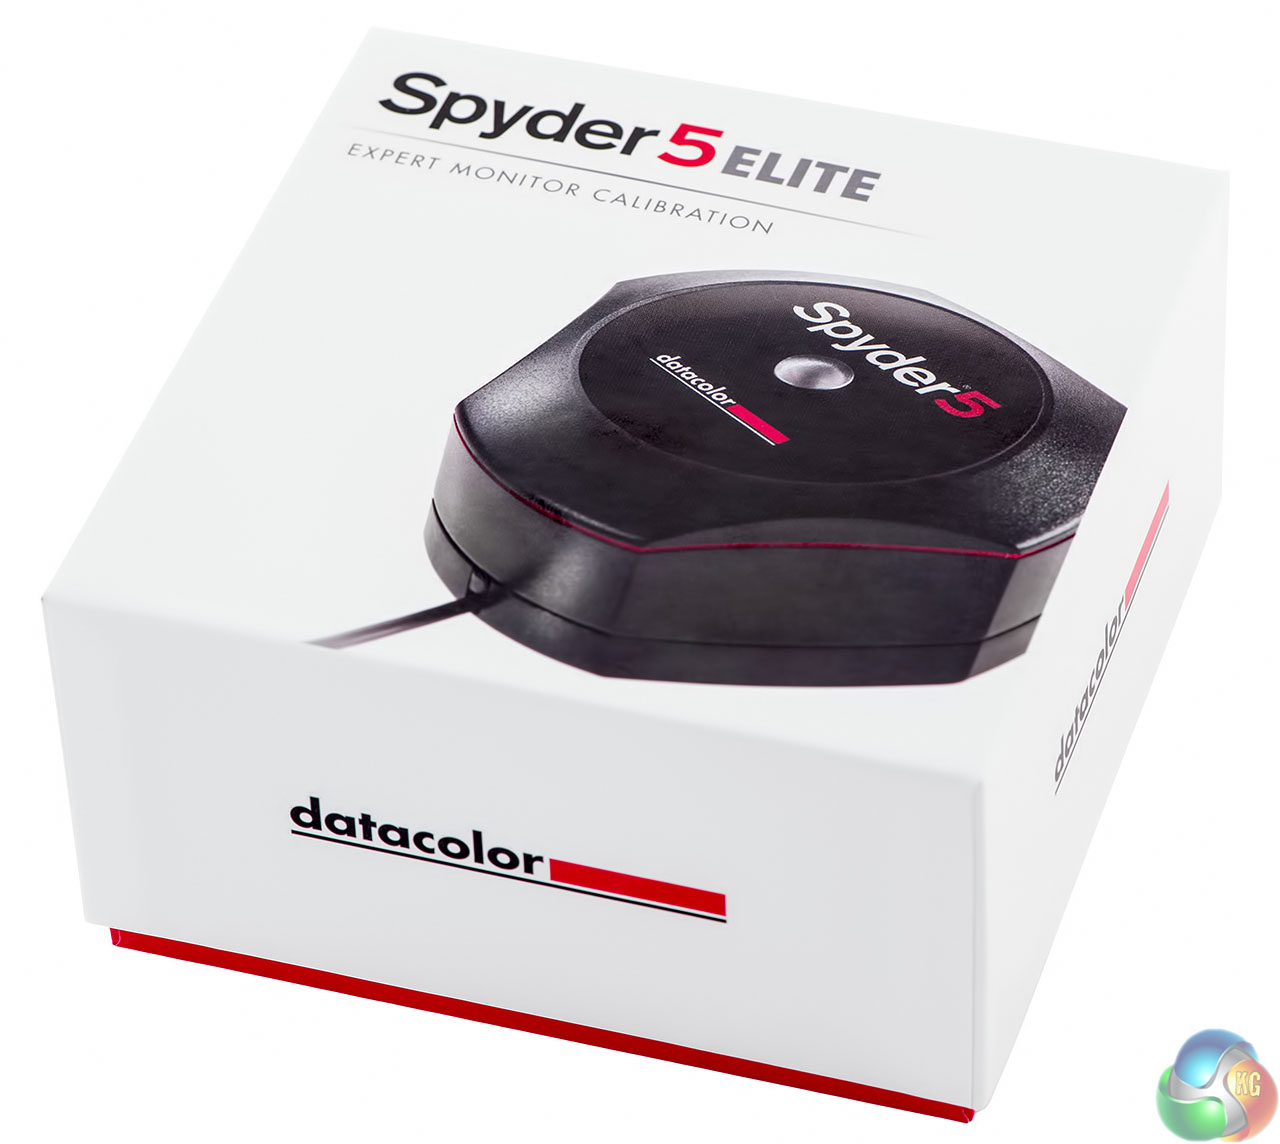 Spyder 3 Elite Software